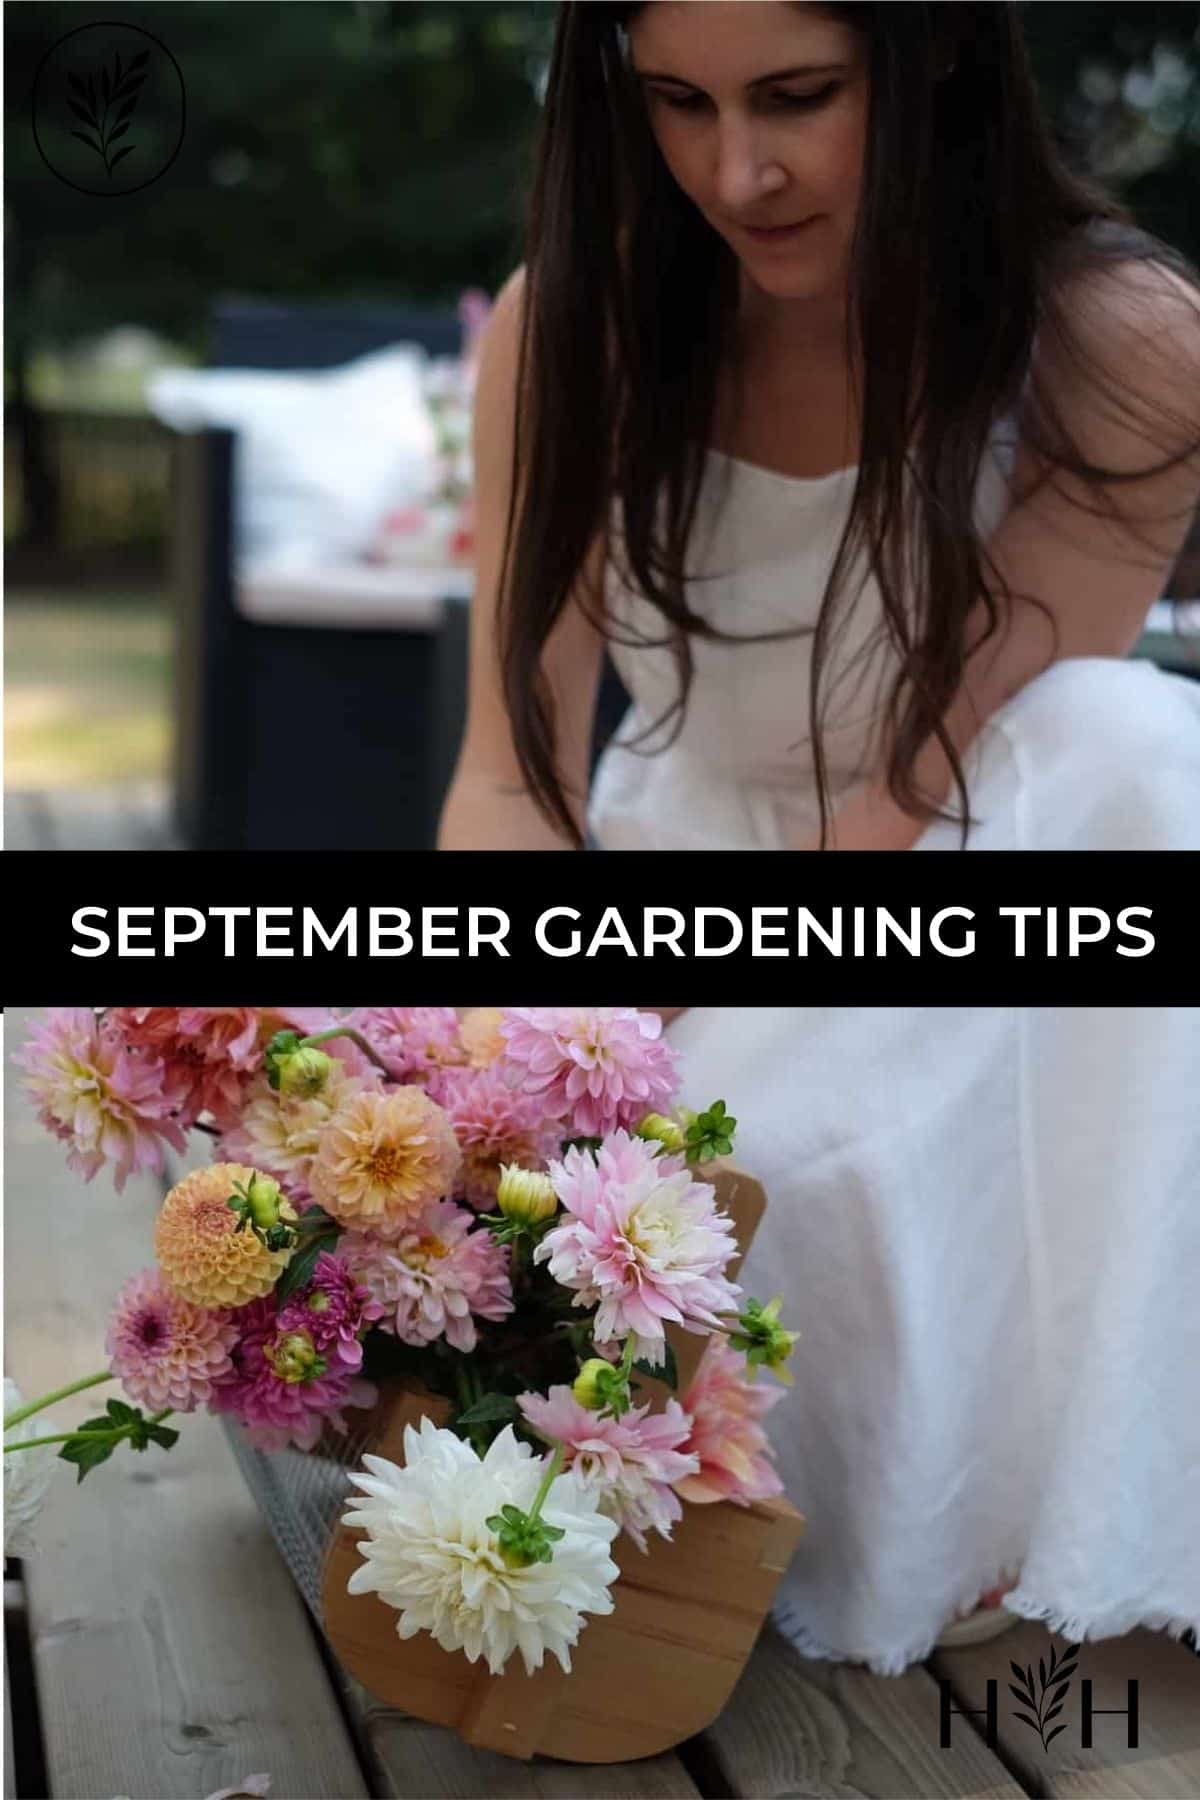 September gardening tips via @home4theharvest